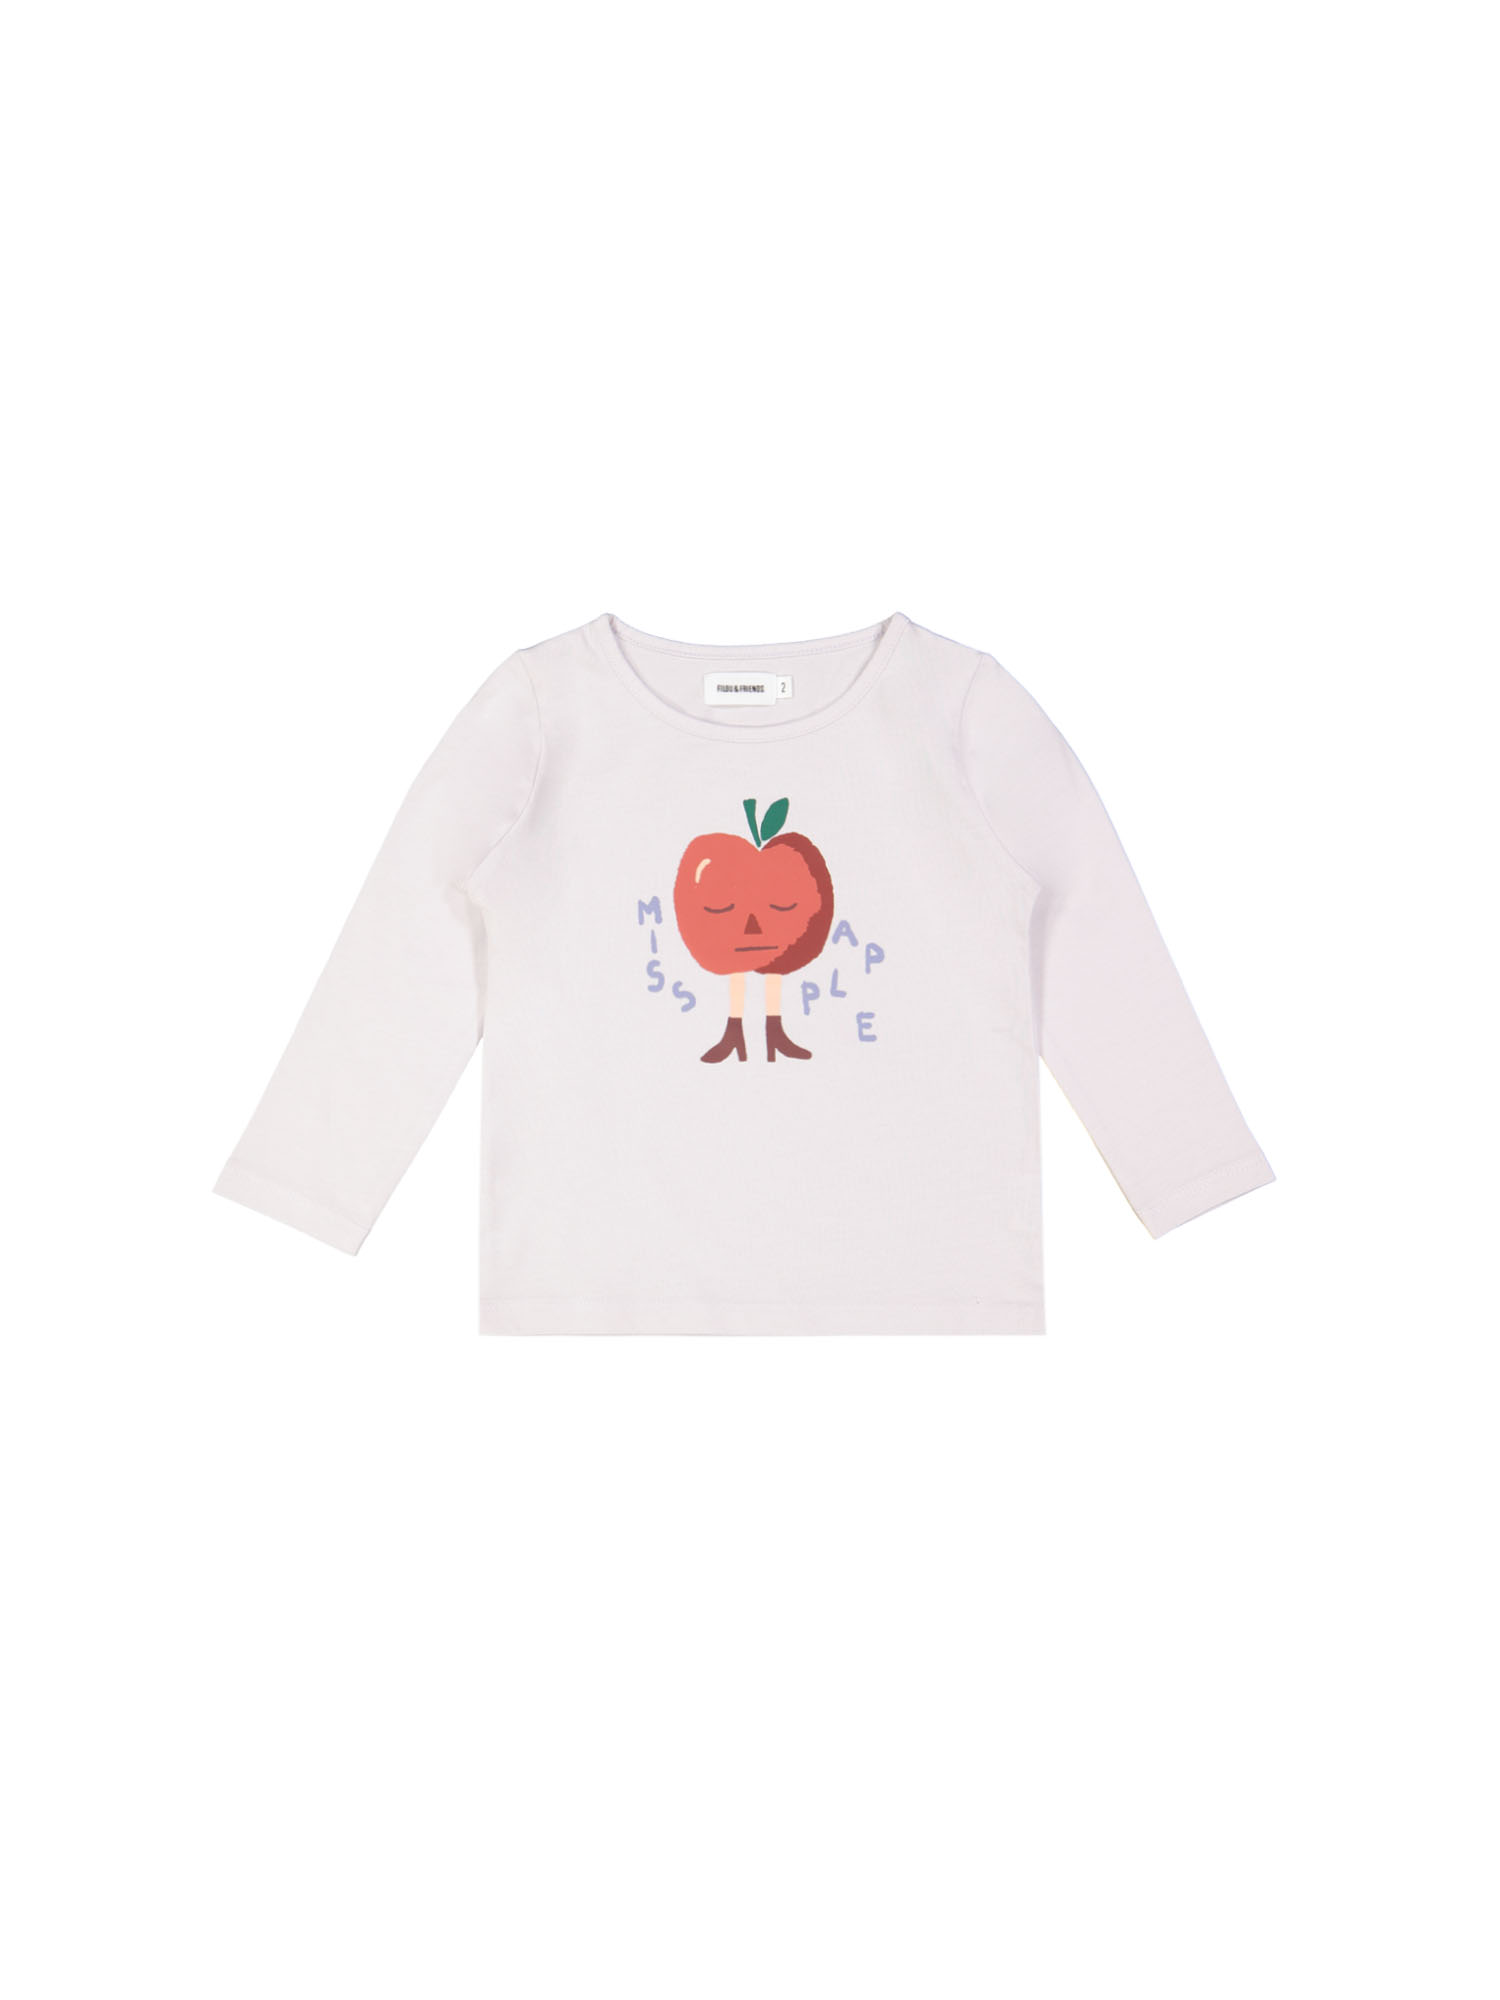 T-shirt miss apple lila 09j